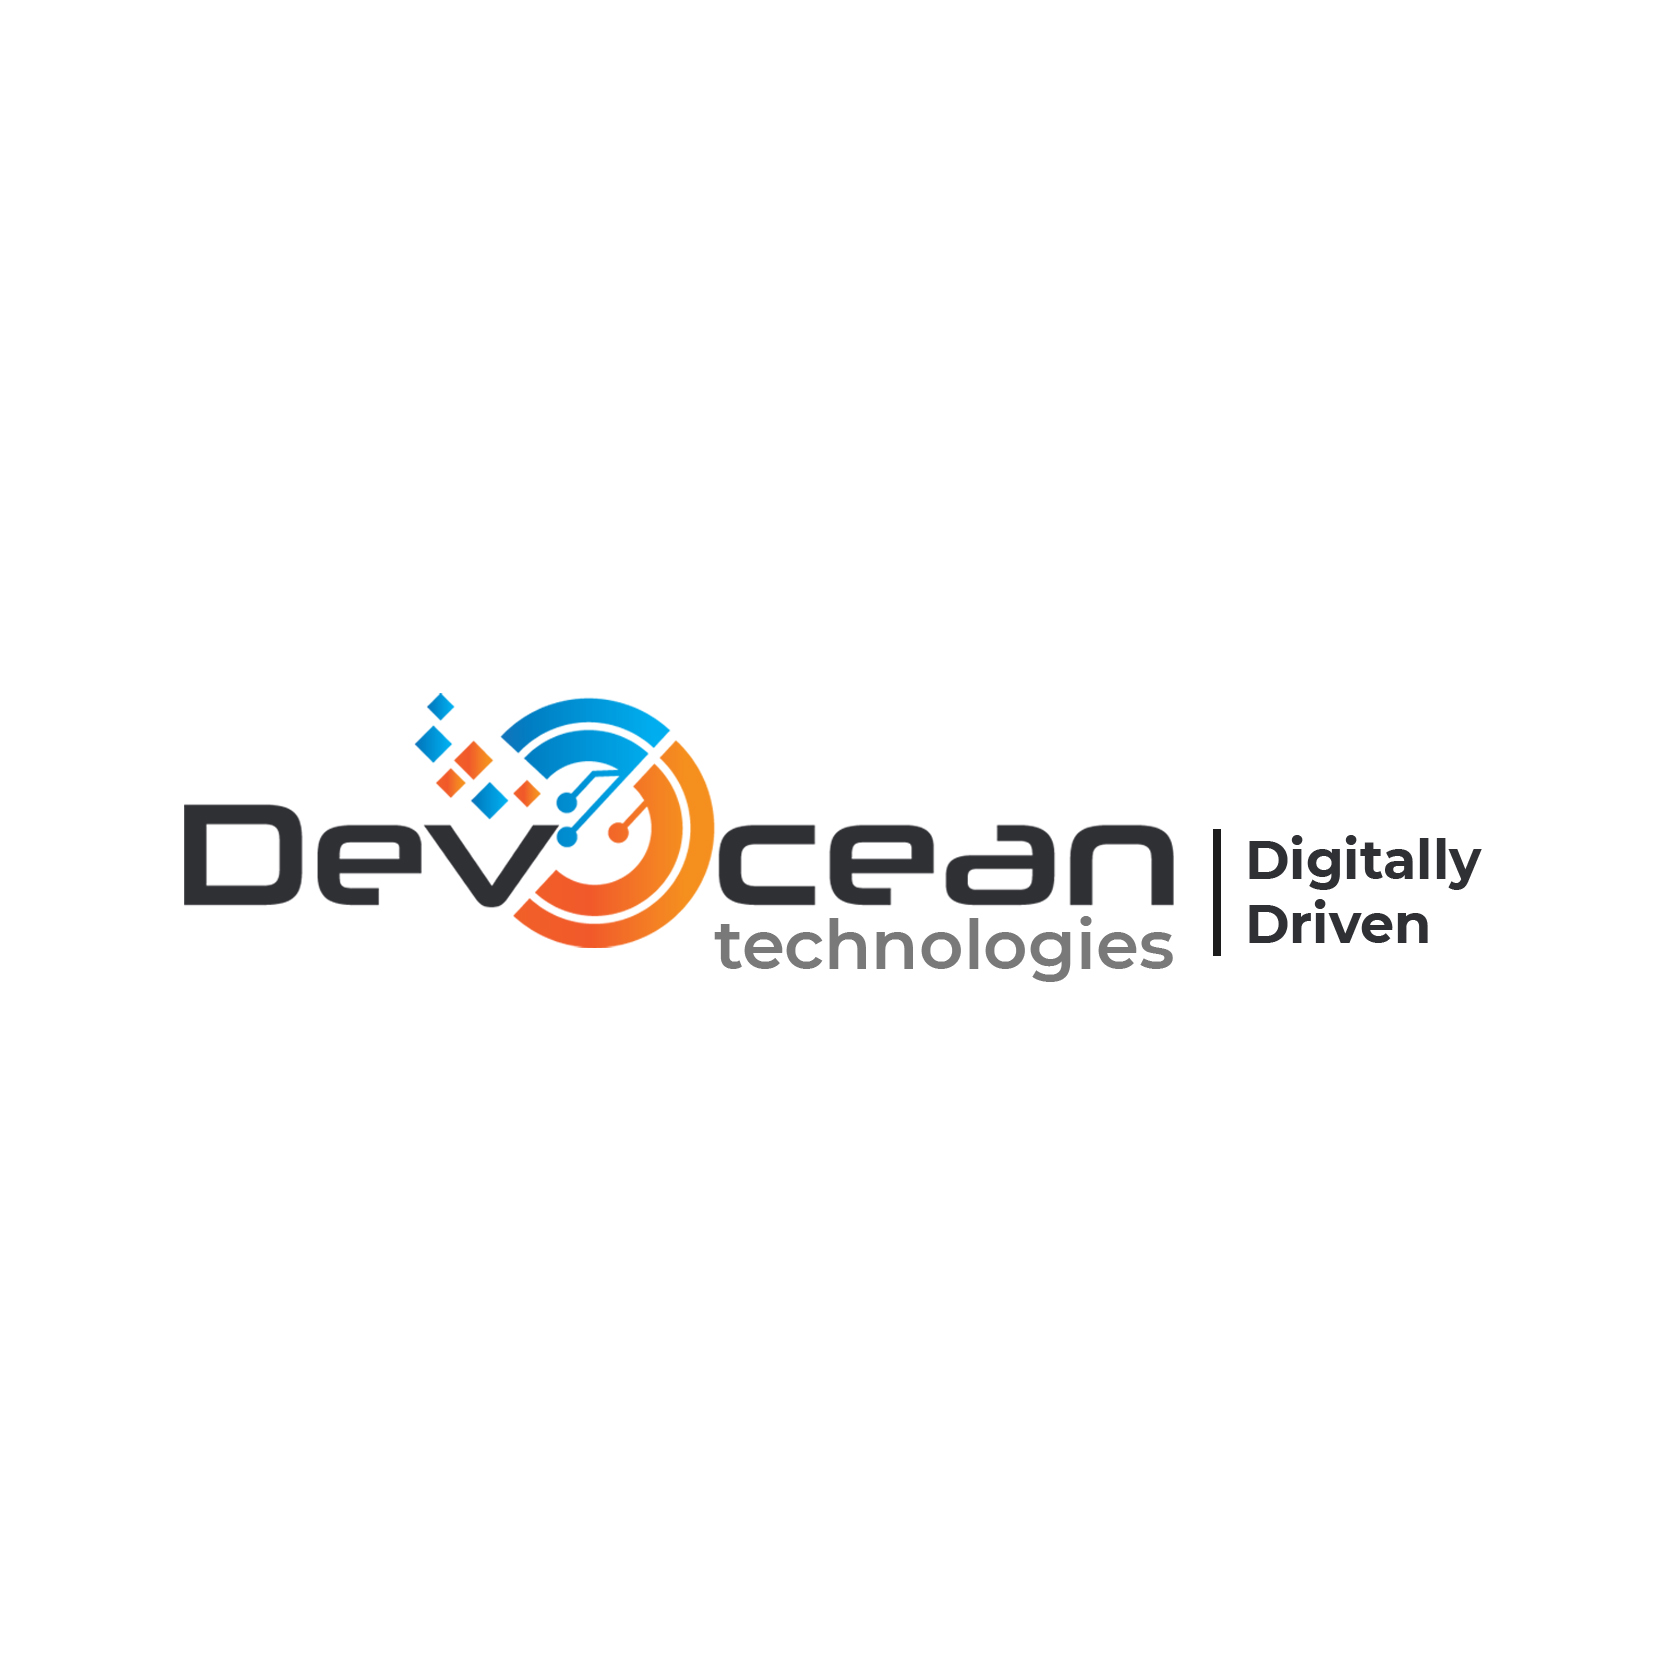 DevOcean Technologies